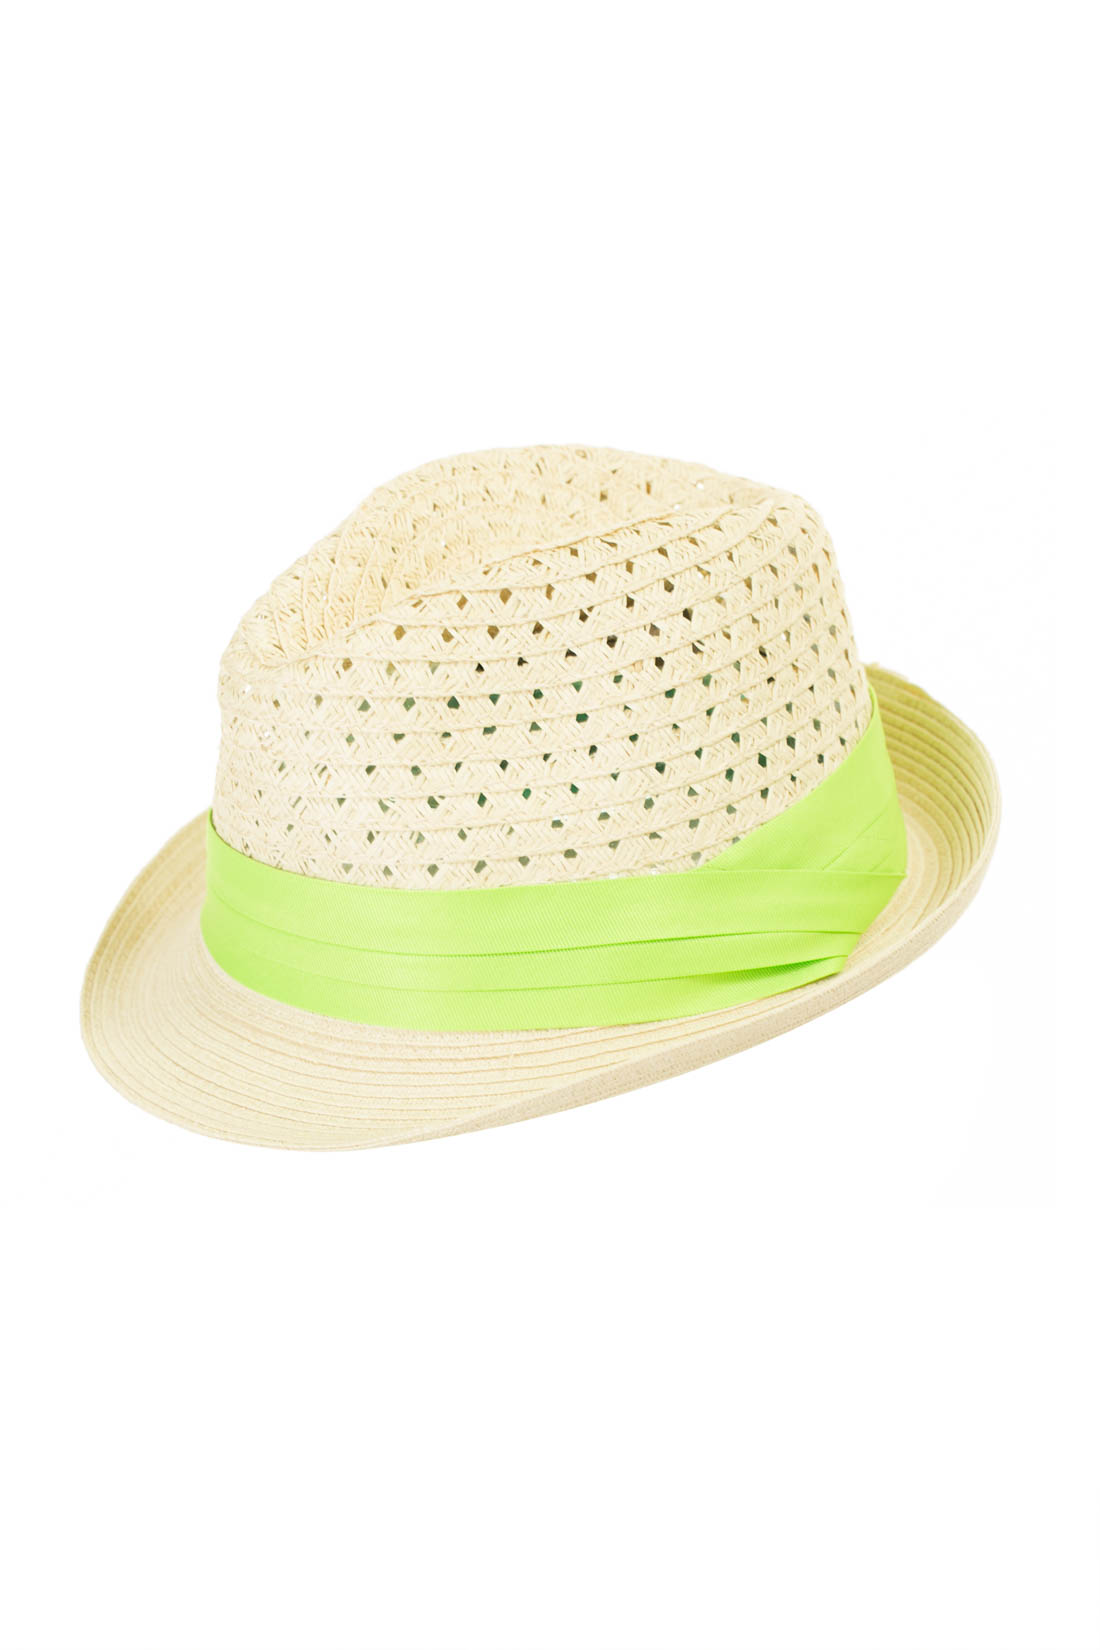 Шляпа с лентой (арт. baon B347004), размер 54-56, цвет бежевый Шляпа с лентой (арт. baon B347004) - фото 1